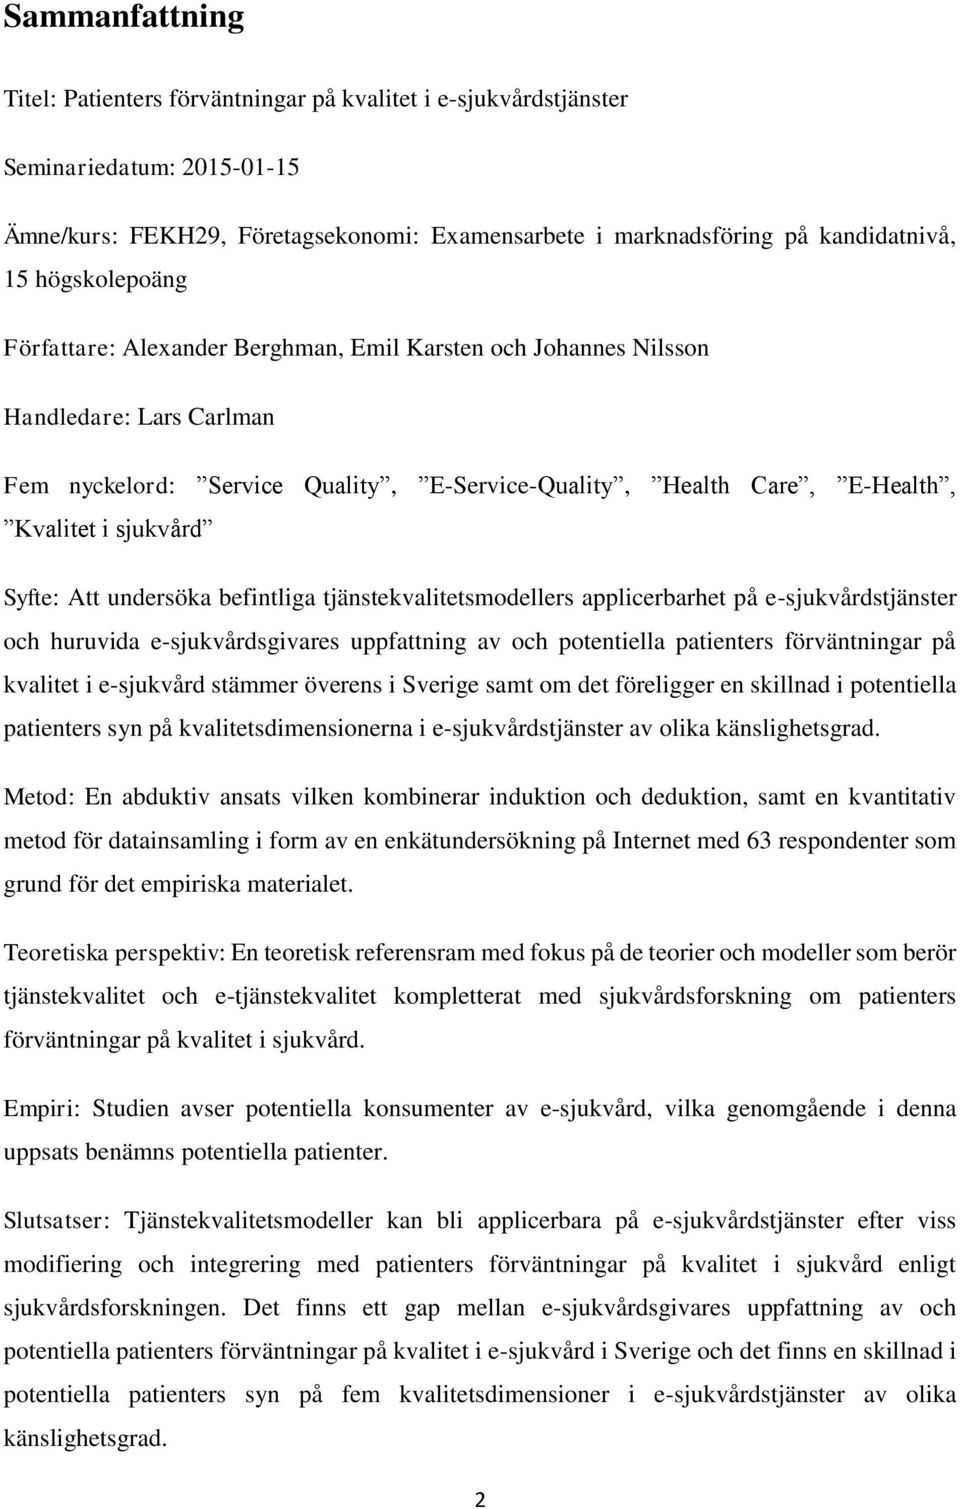 Syfte: Att undersöka befintliga tjänstekvalitetsmodellers applicerbarhet på e-sjukvårdstjänster och huruvida e-sjukvårdsgivares uppfattning av och potentiella patienters förväntningar på kvalitet i